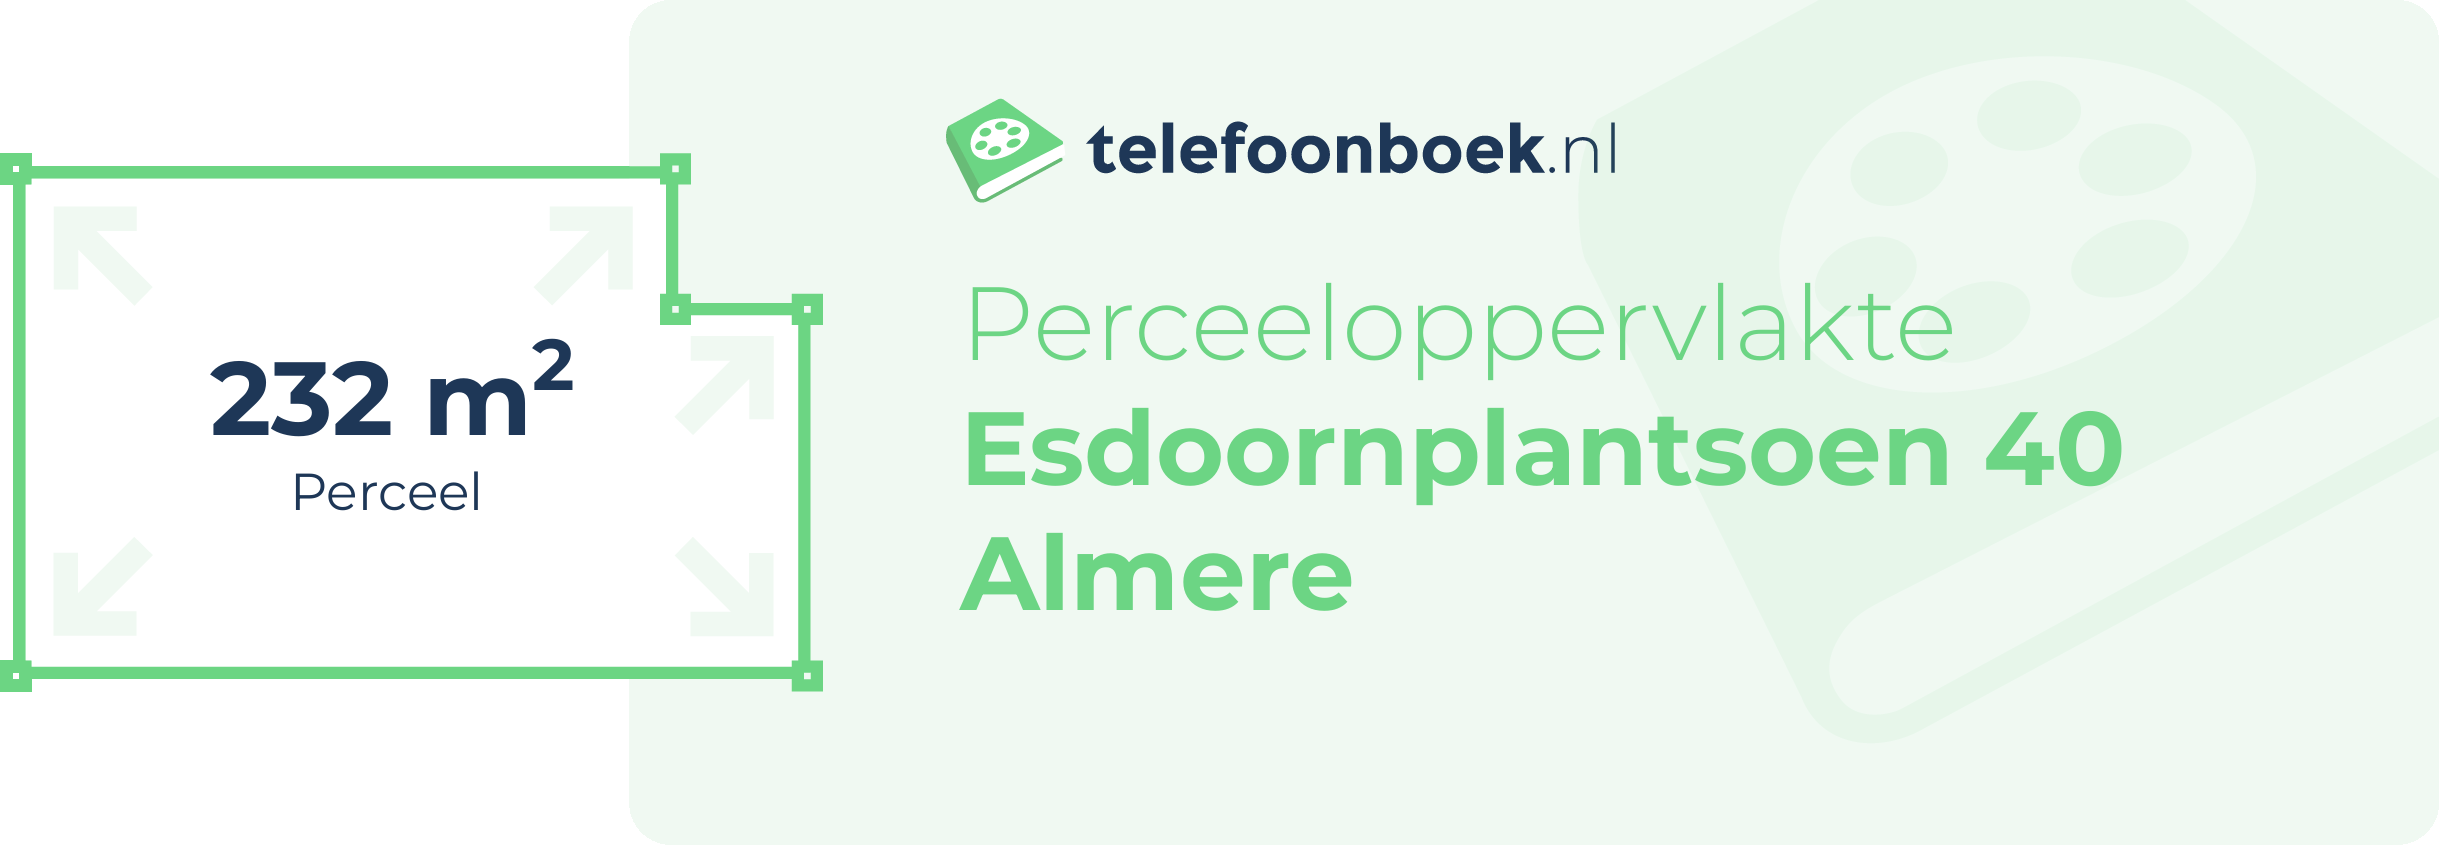 Perceeloppervlakte Esdoornplantsoen 40 Almere